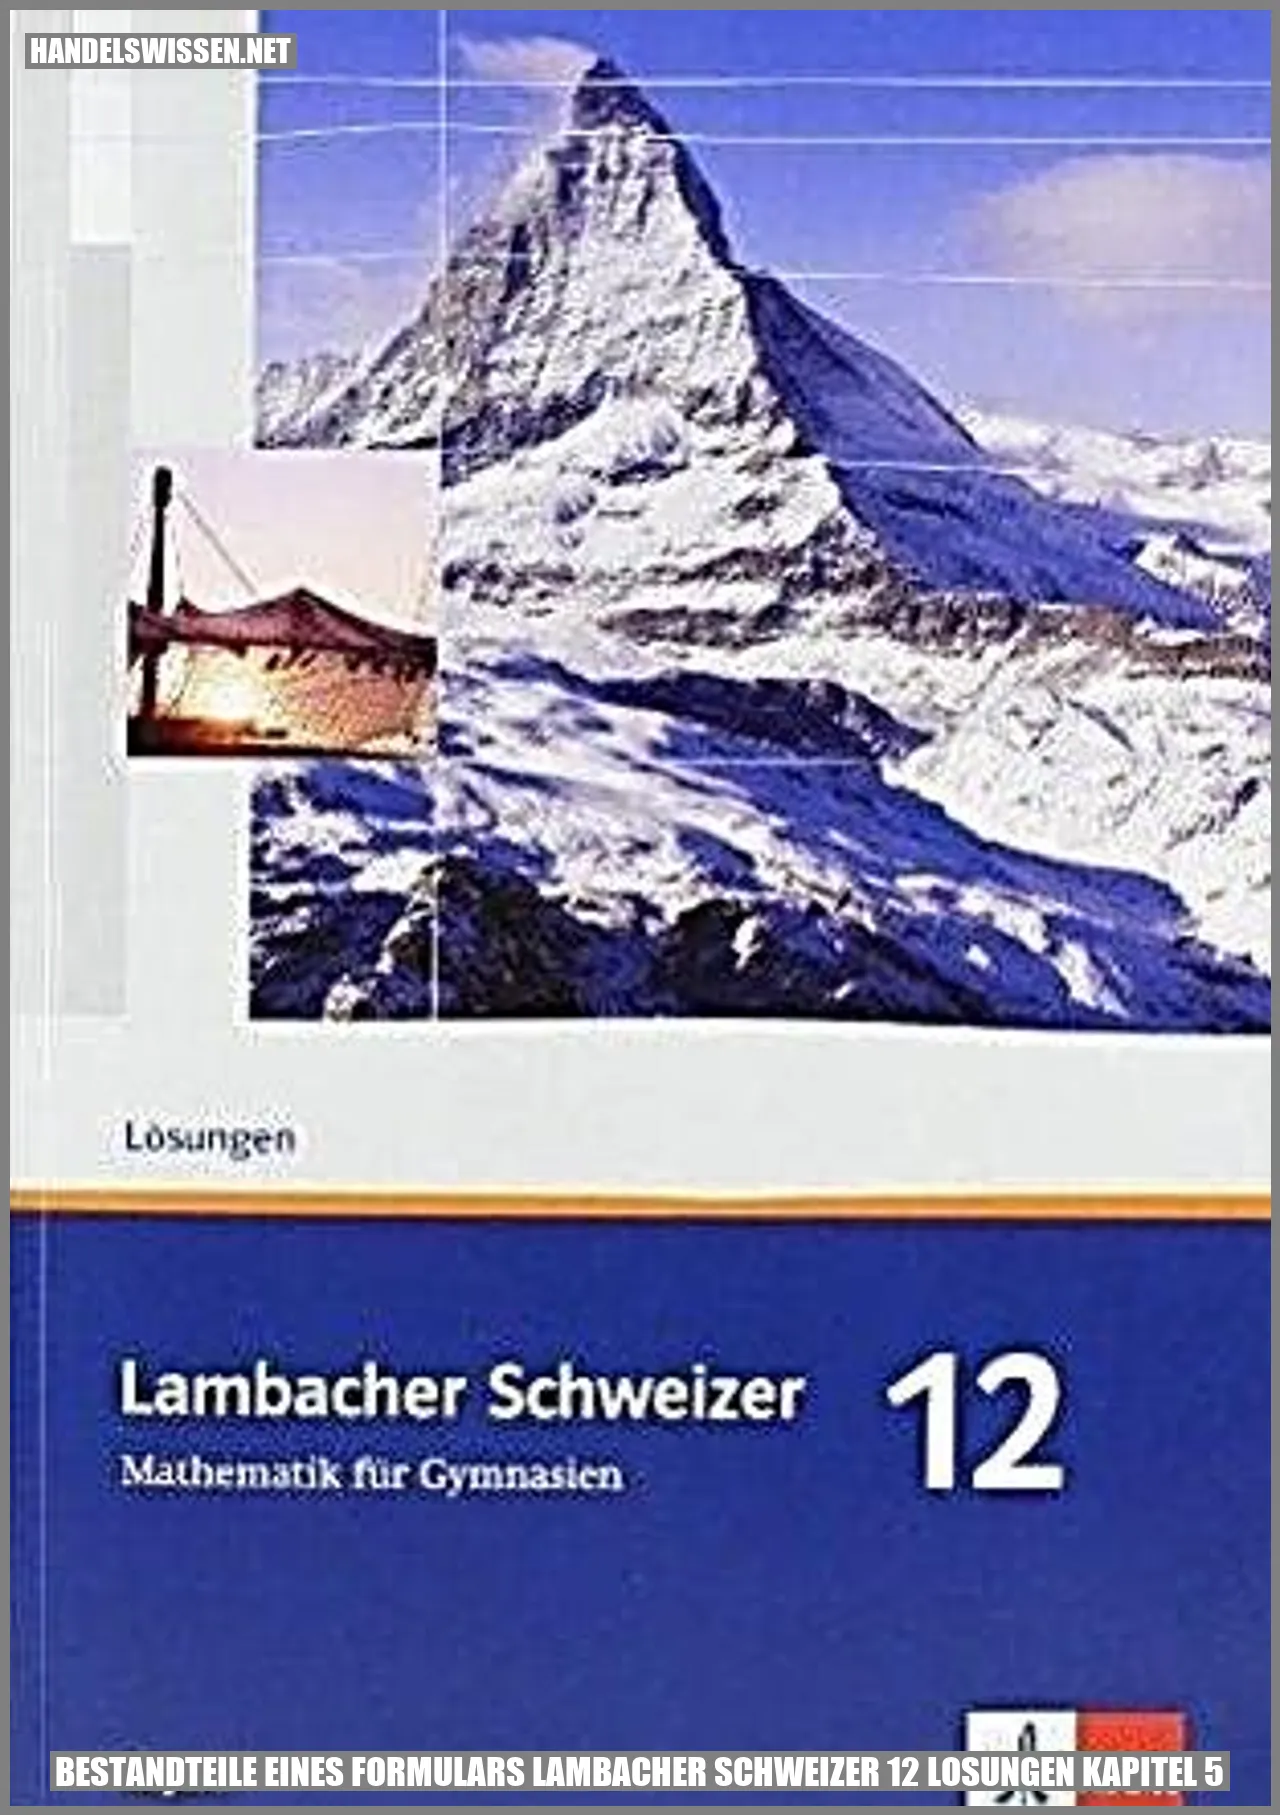 Bestandteile eines Formulars in Lambacher Schweizer 12 Lösungen Kapitel 5